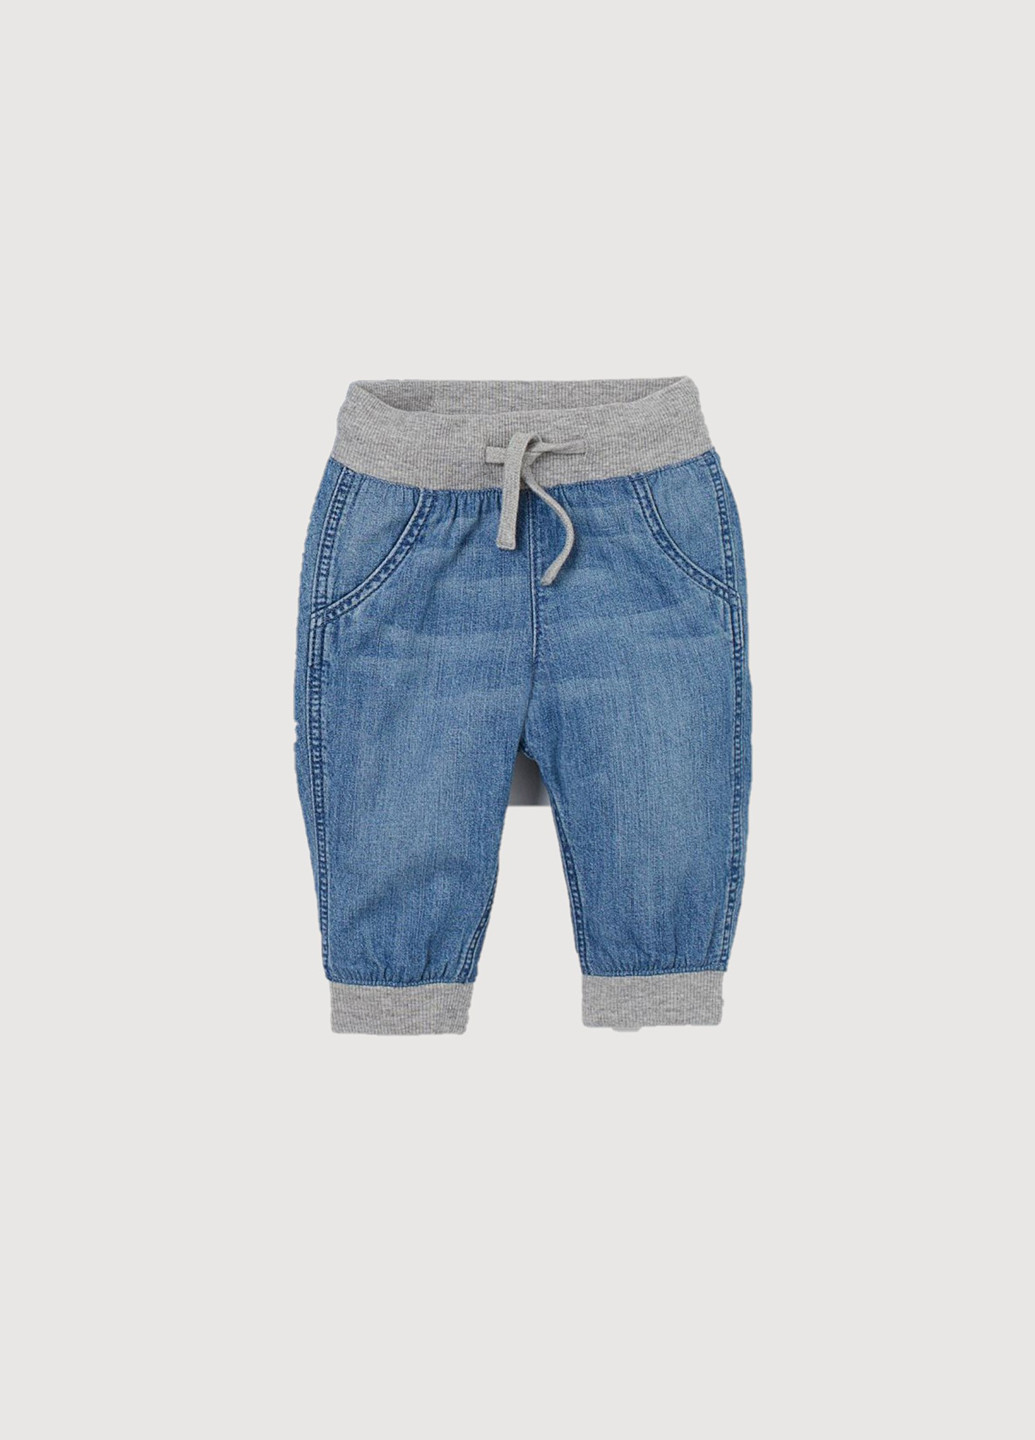 Голубые джинсовые демисезонные брюки джоггеры H&M